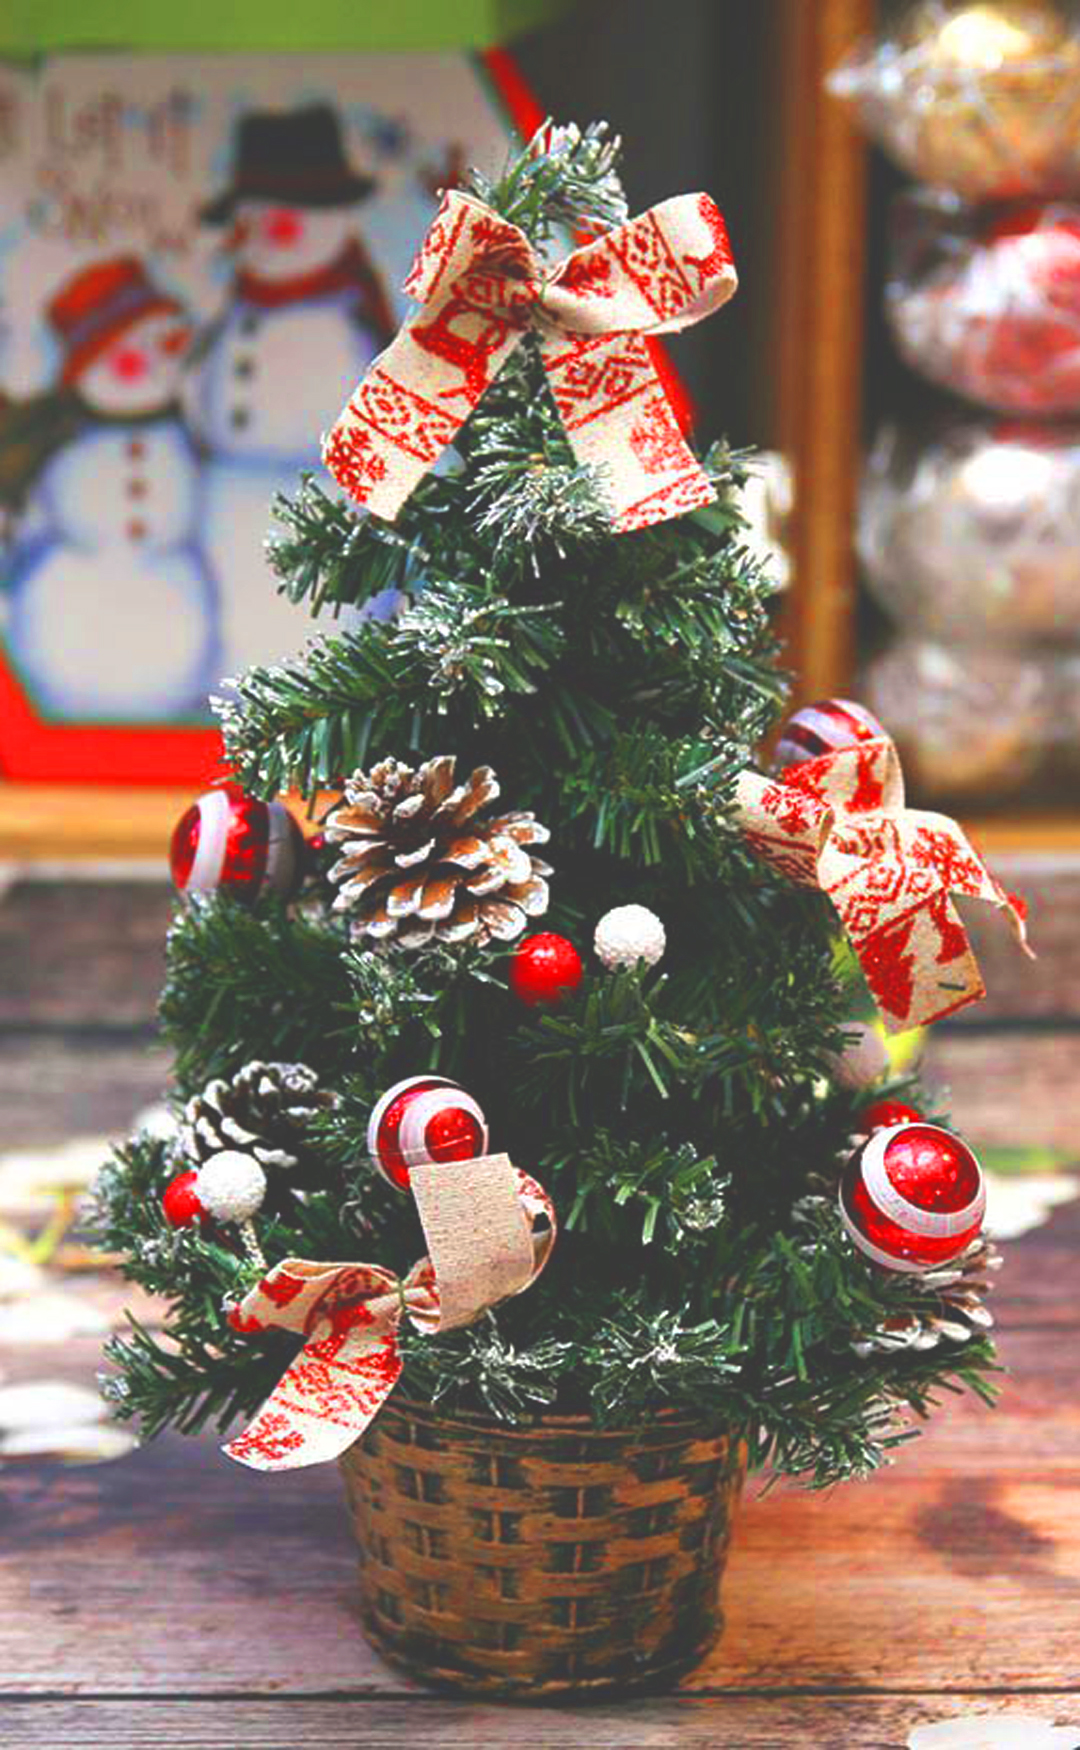 Hình ảnh cây thông Noel đẹp sẽ khiến bạn choáng ngợp về vẻ đẹp đầy ấn tượng của cây thông trong Lễ Giáng sinh. Hãy tham khảo những mẫu cây thông độc đáo và mang tính ứng dụng sử dụng trong không gian sống của bạn!